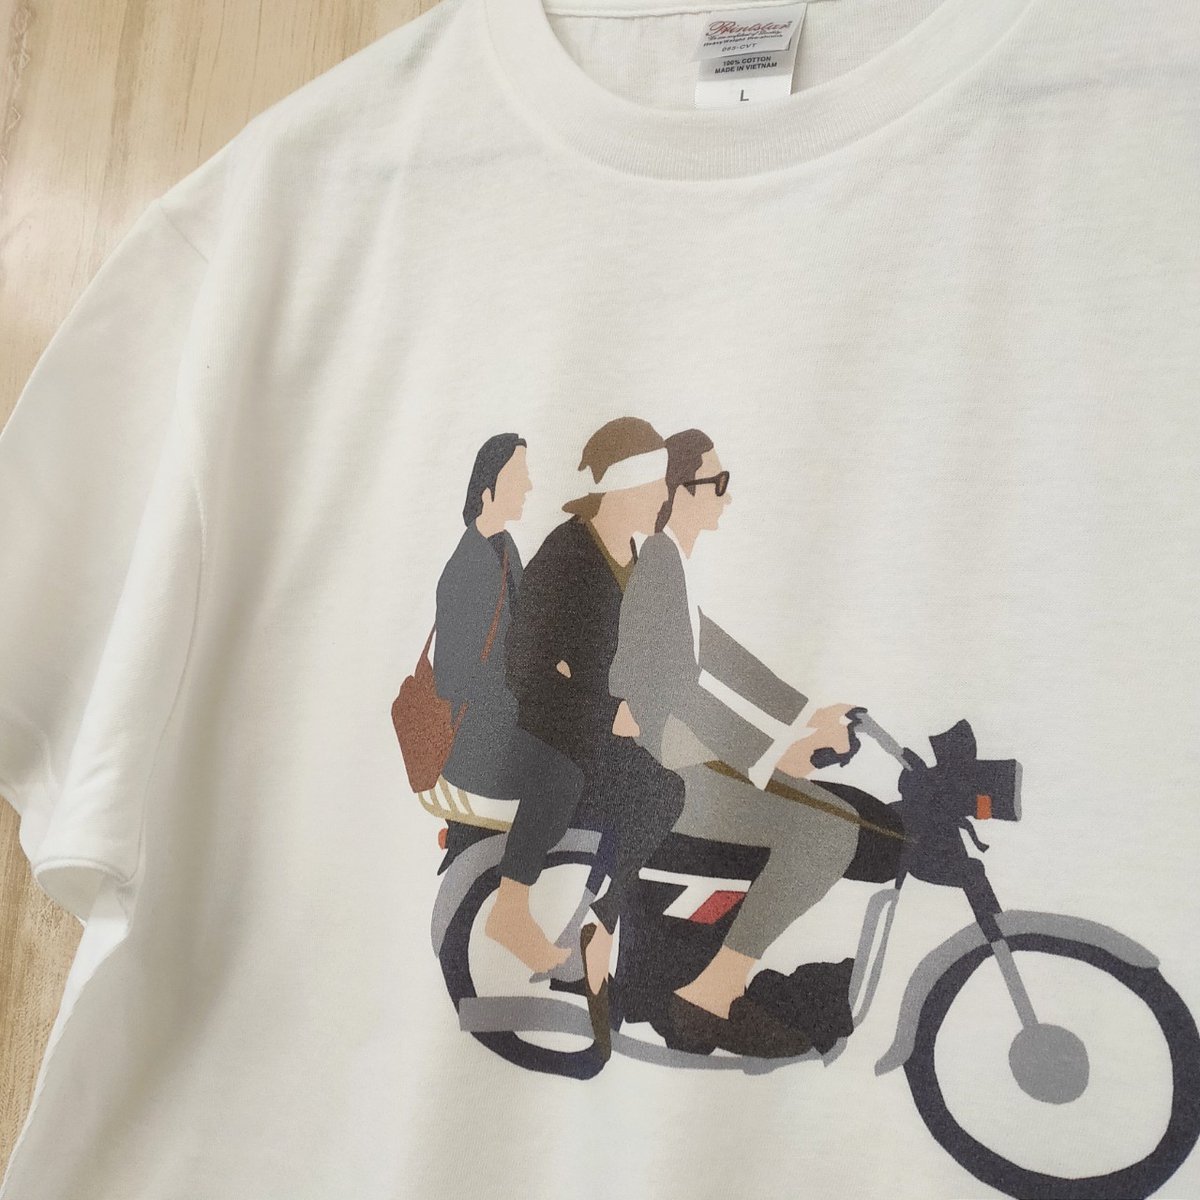 Hoimi Tシャツ屋さん Pa Twitter 映画がモチーフのイラストアートtシャツ Designed By Panicjunkie こちらのボディは 5 6オンスのtシャツになります ほどよい厚みとしっかりした作りで夏も着やすく 長く着ていただけますよ T Co Ondofcac6j デザインt